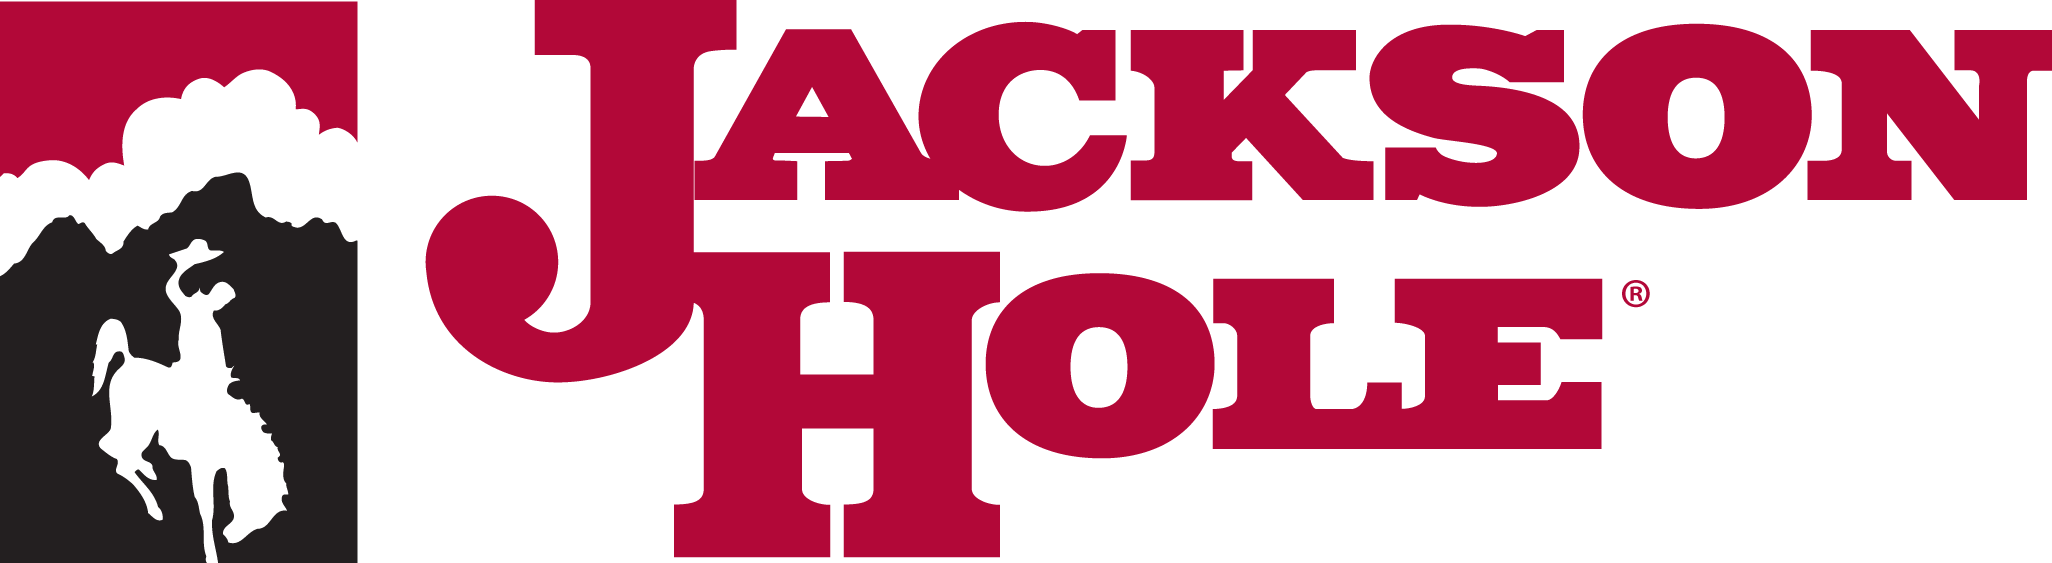 jackson-hole-logo